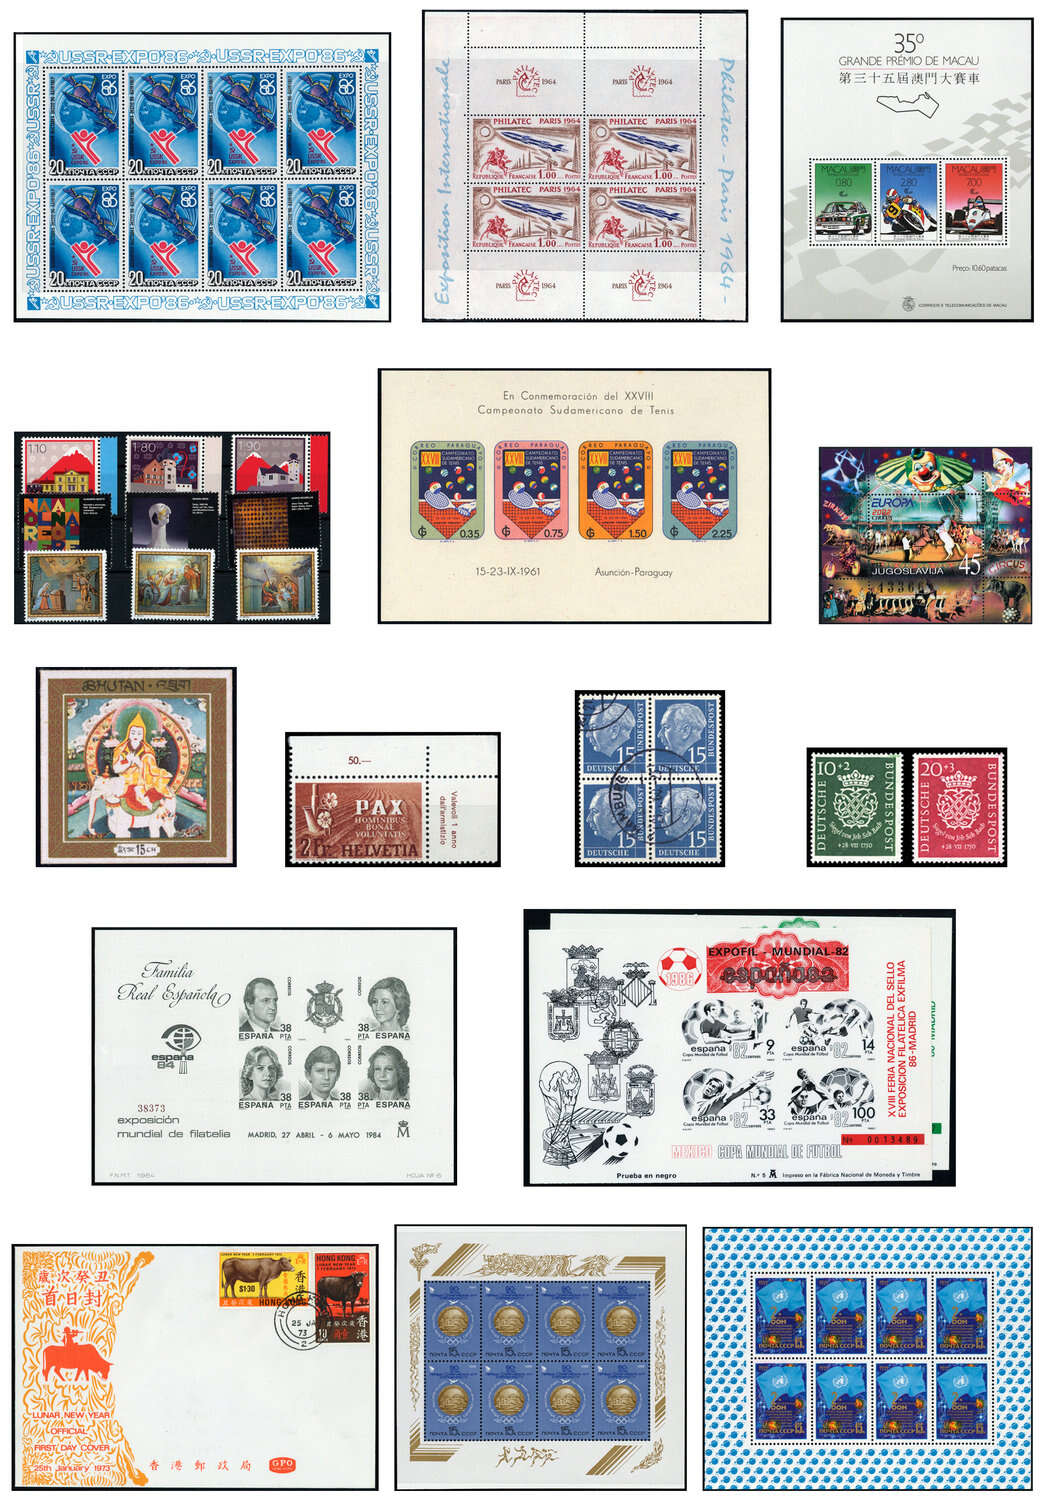 Lot 33 - sammlungen und posten sammlernachlässe -  Deutsche Briefmarken AG 6th Large Lot Auction Deutsche Briefmarken AG